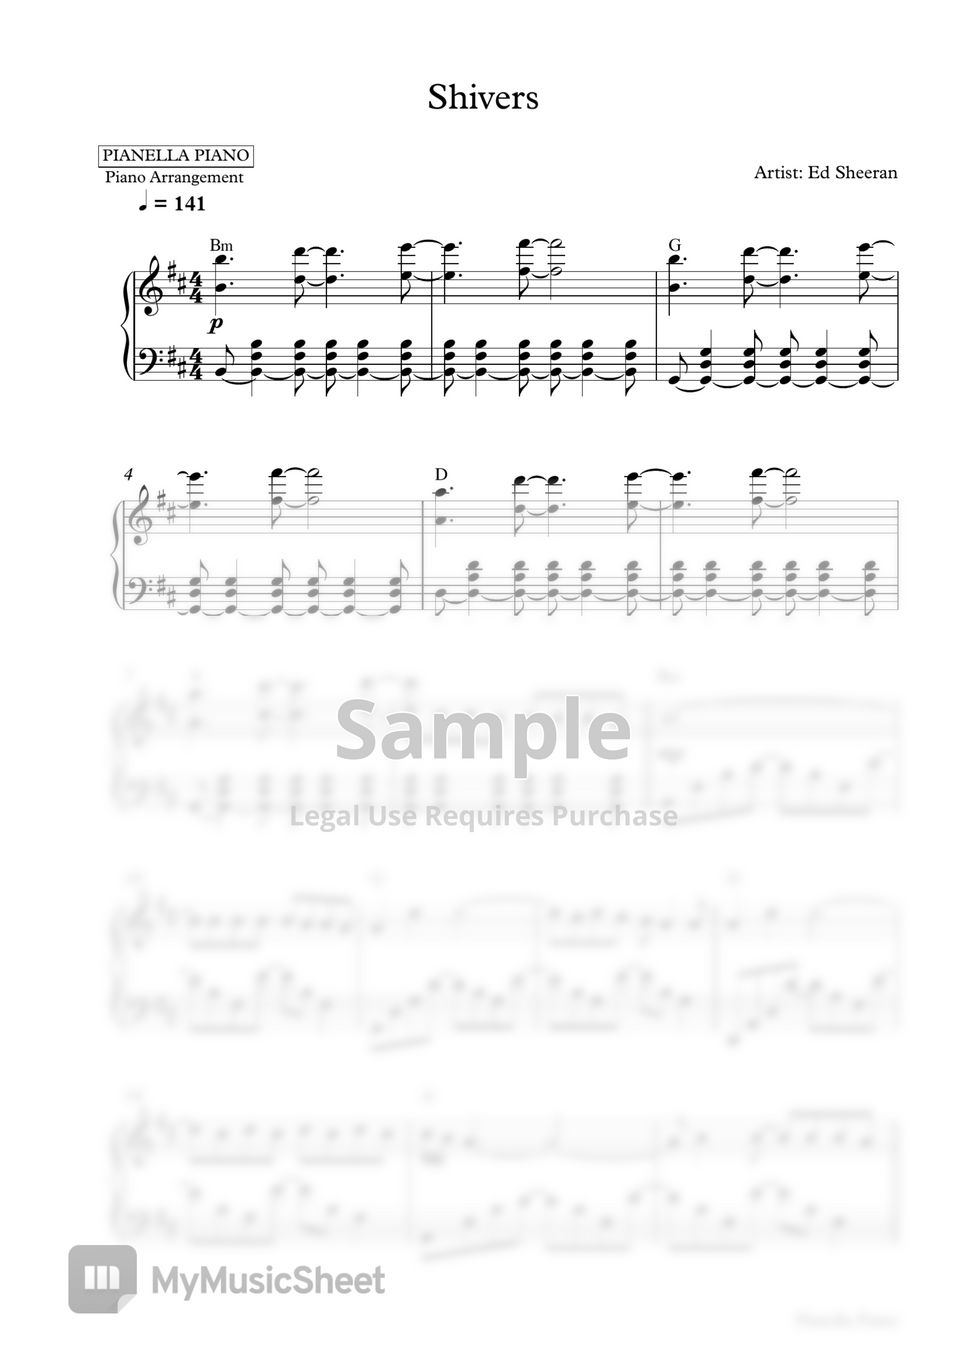 Ed Sheeran - Shivers (Piano Sheet) by Pianella Piano